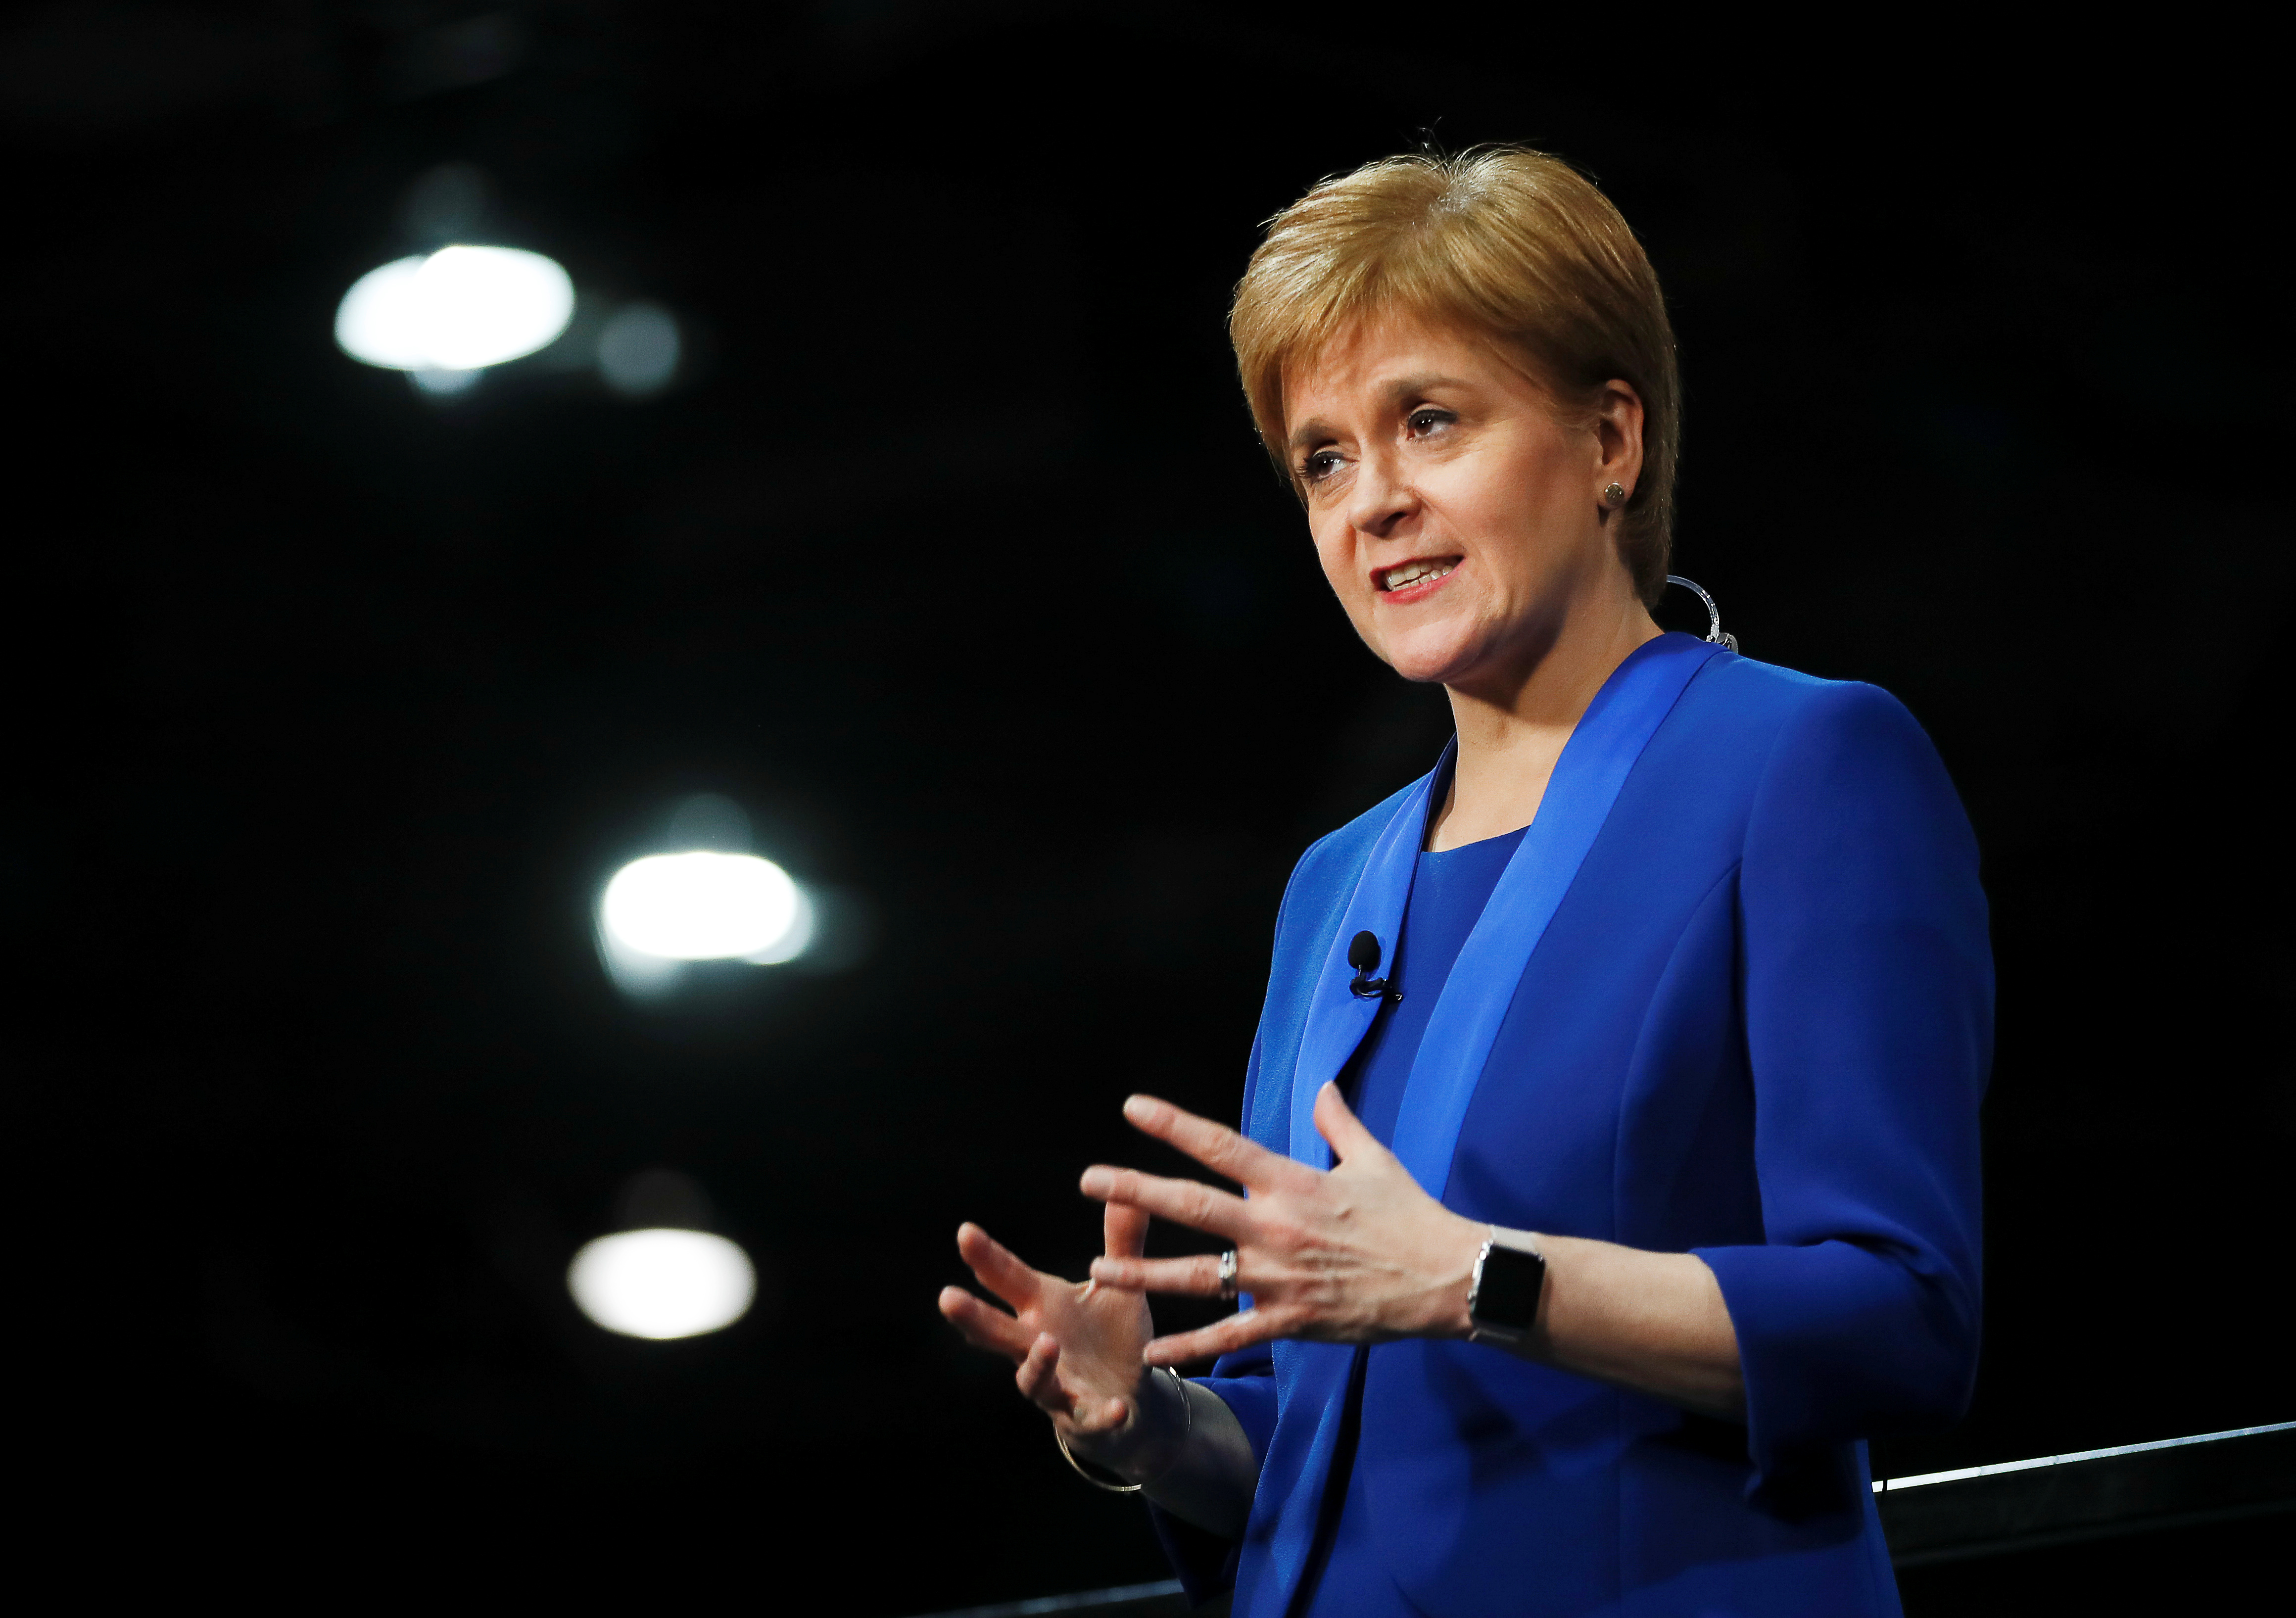 Εκλογές Βρετανία: Νέο δημοψήφισμα για αποχώρηση ζητά η Σκωτία